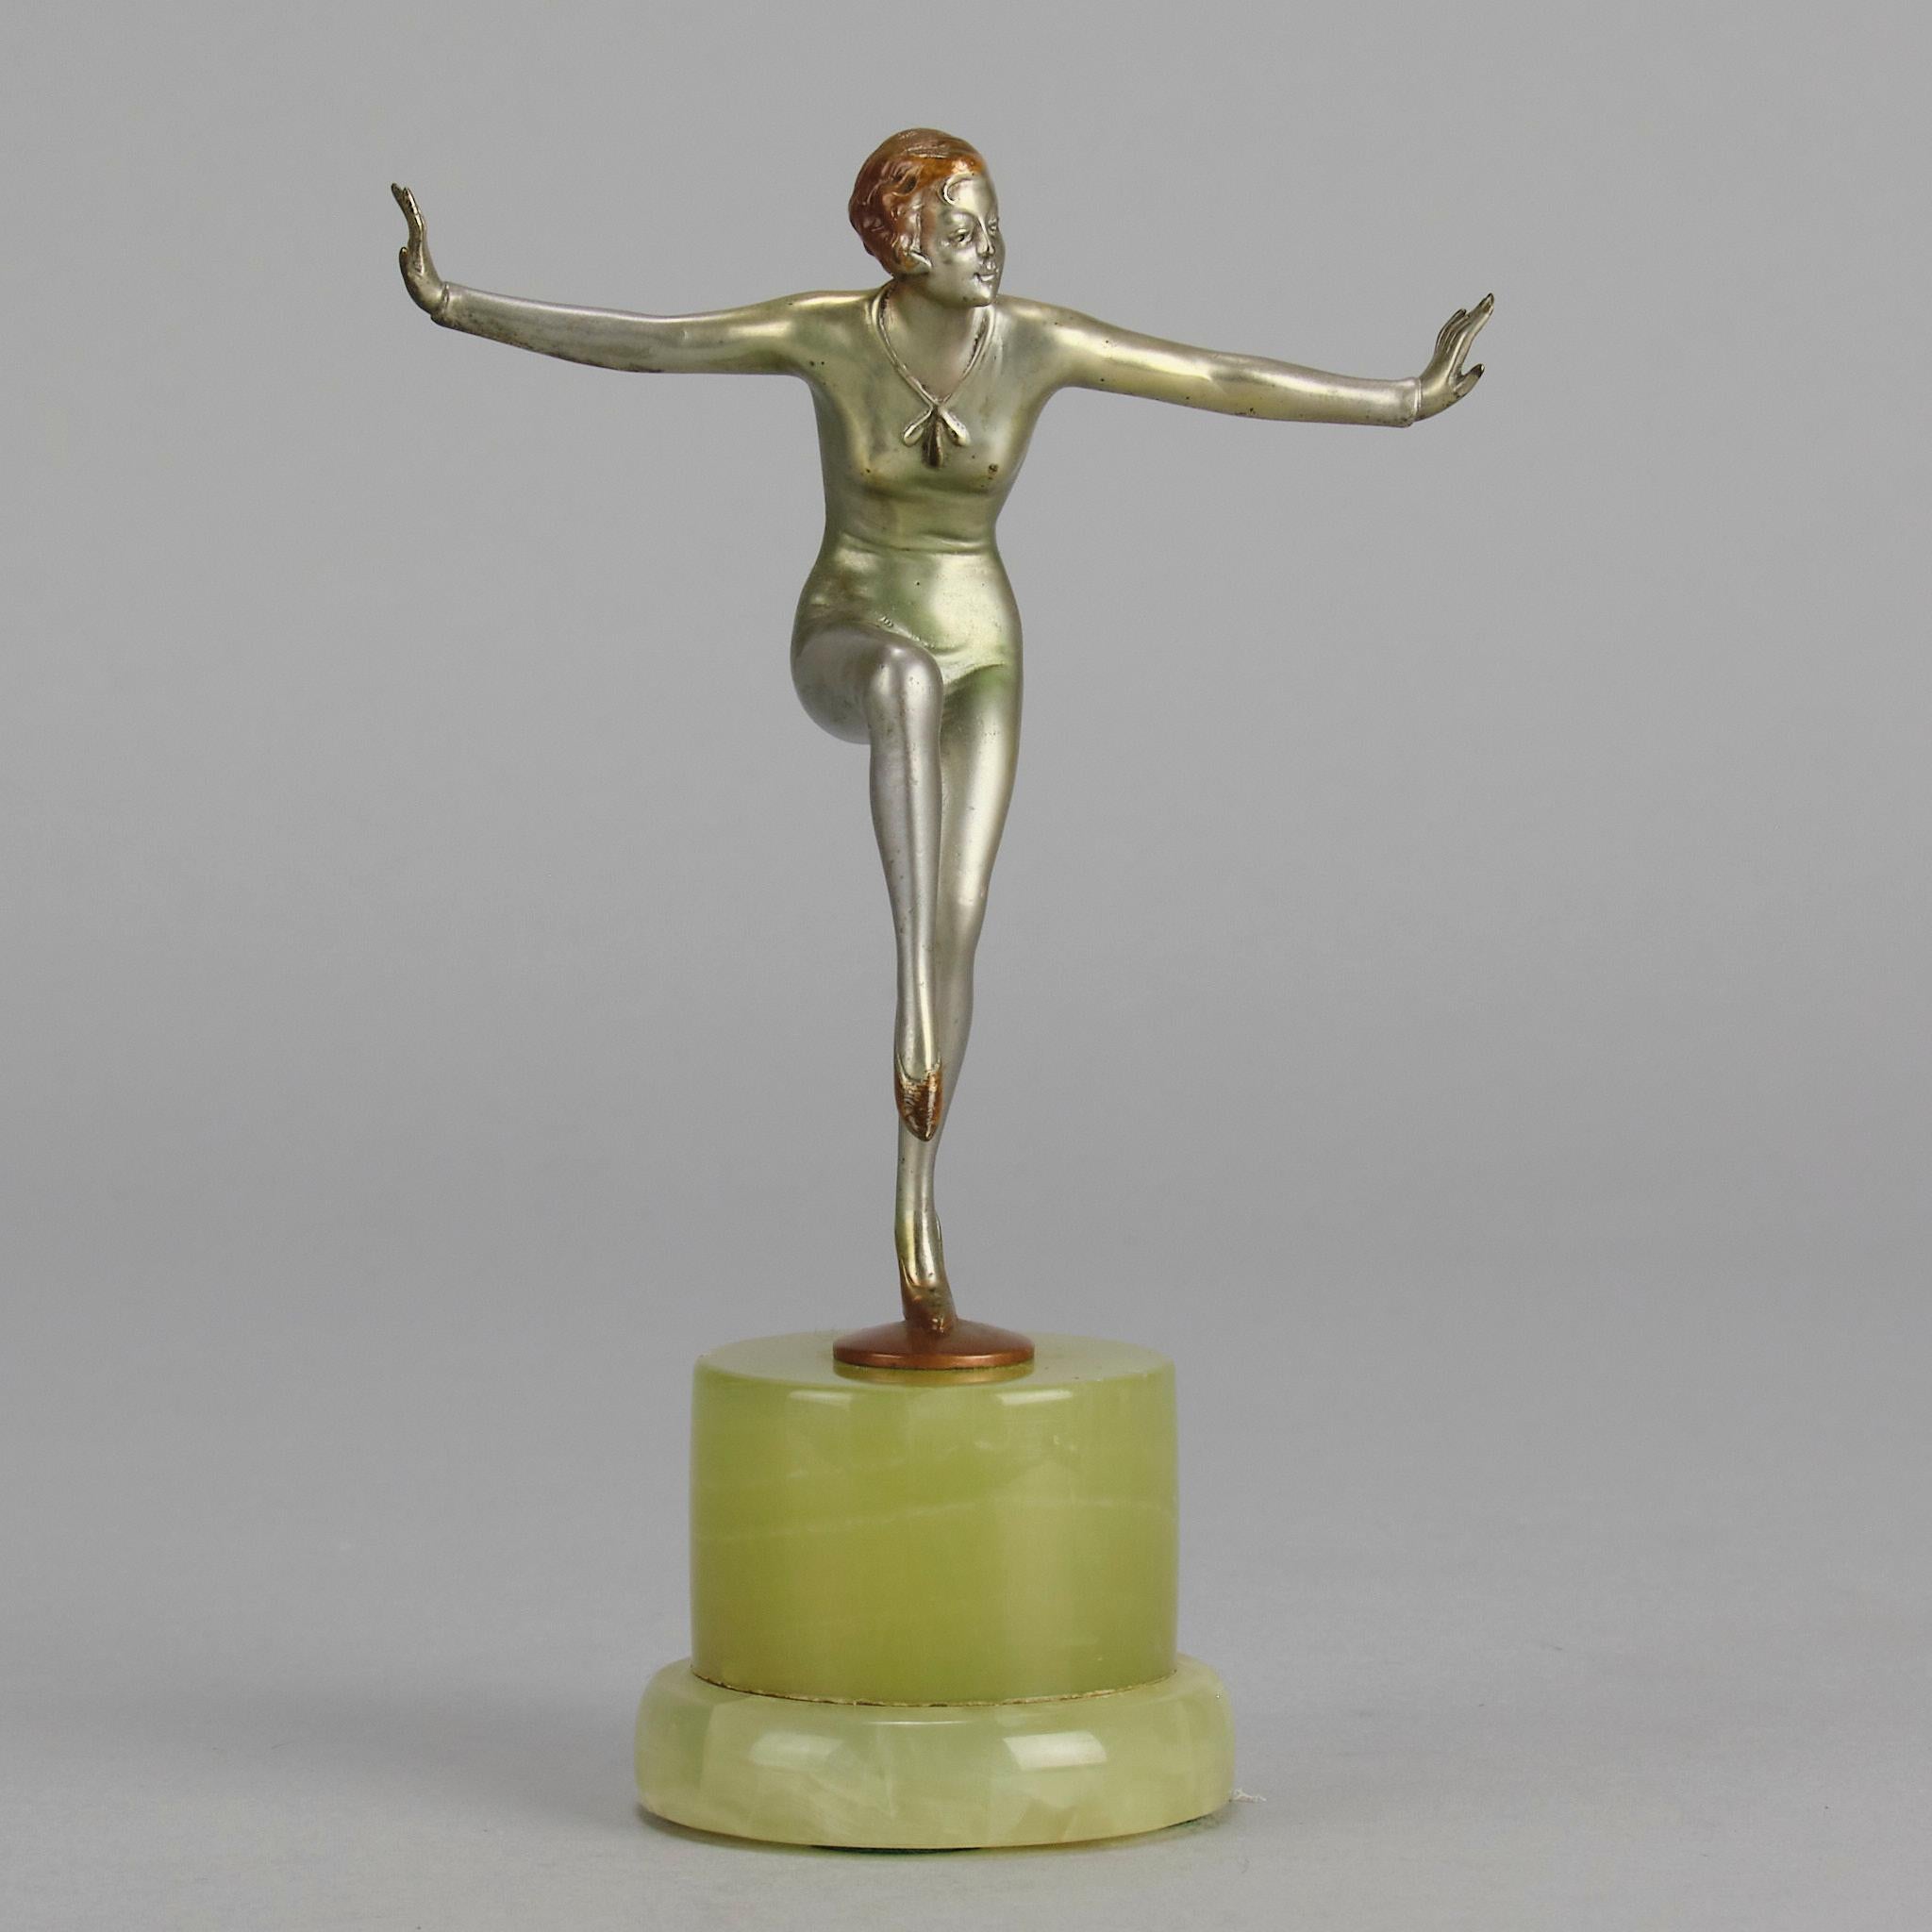 Eine beeindruckende Bronzefigur aus dem frühen 20. Jahrhundert, kalt bemalt, vergoldet und emailliert, die eine junge, energiegeladene Schönheit in tänzerischer Pose mit einem um ihre Hüfte drapierten Schal darstellt. Die Bronze mit ausgezeichneter